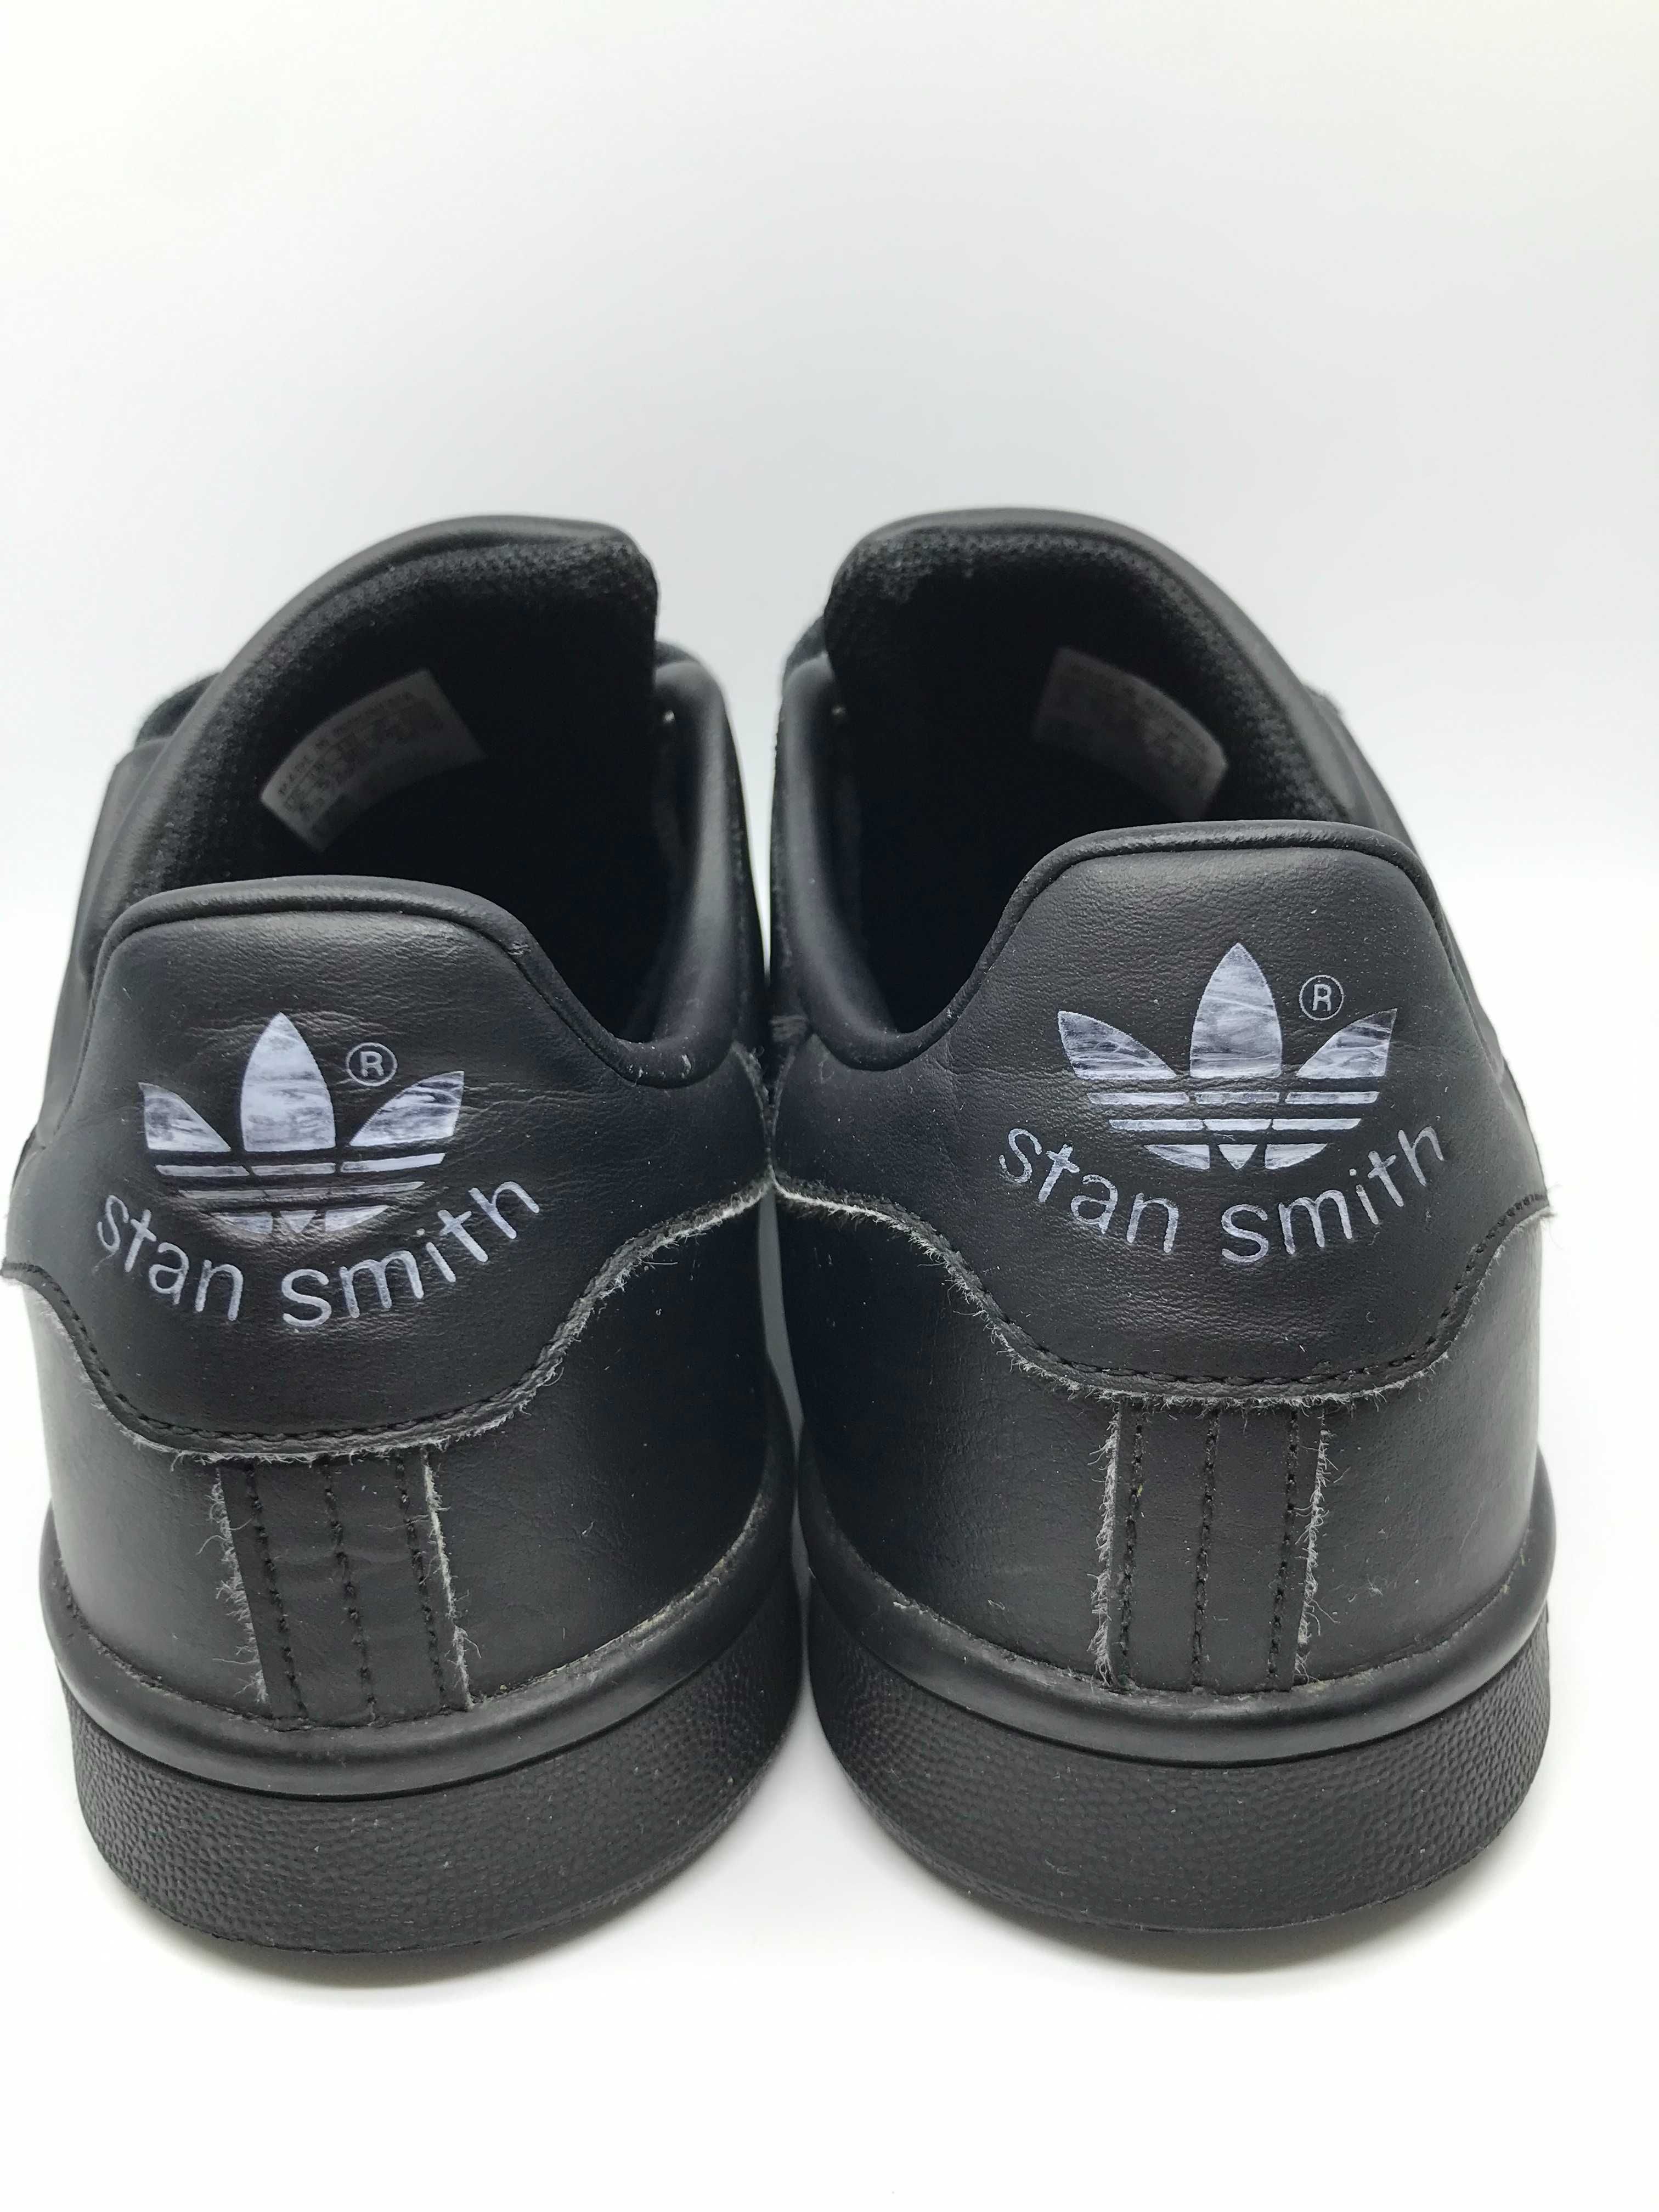 ADIDAS Stan Smith r.38 2/3 oryginalne skórzane buty damskie